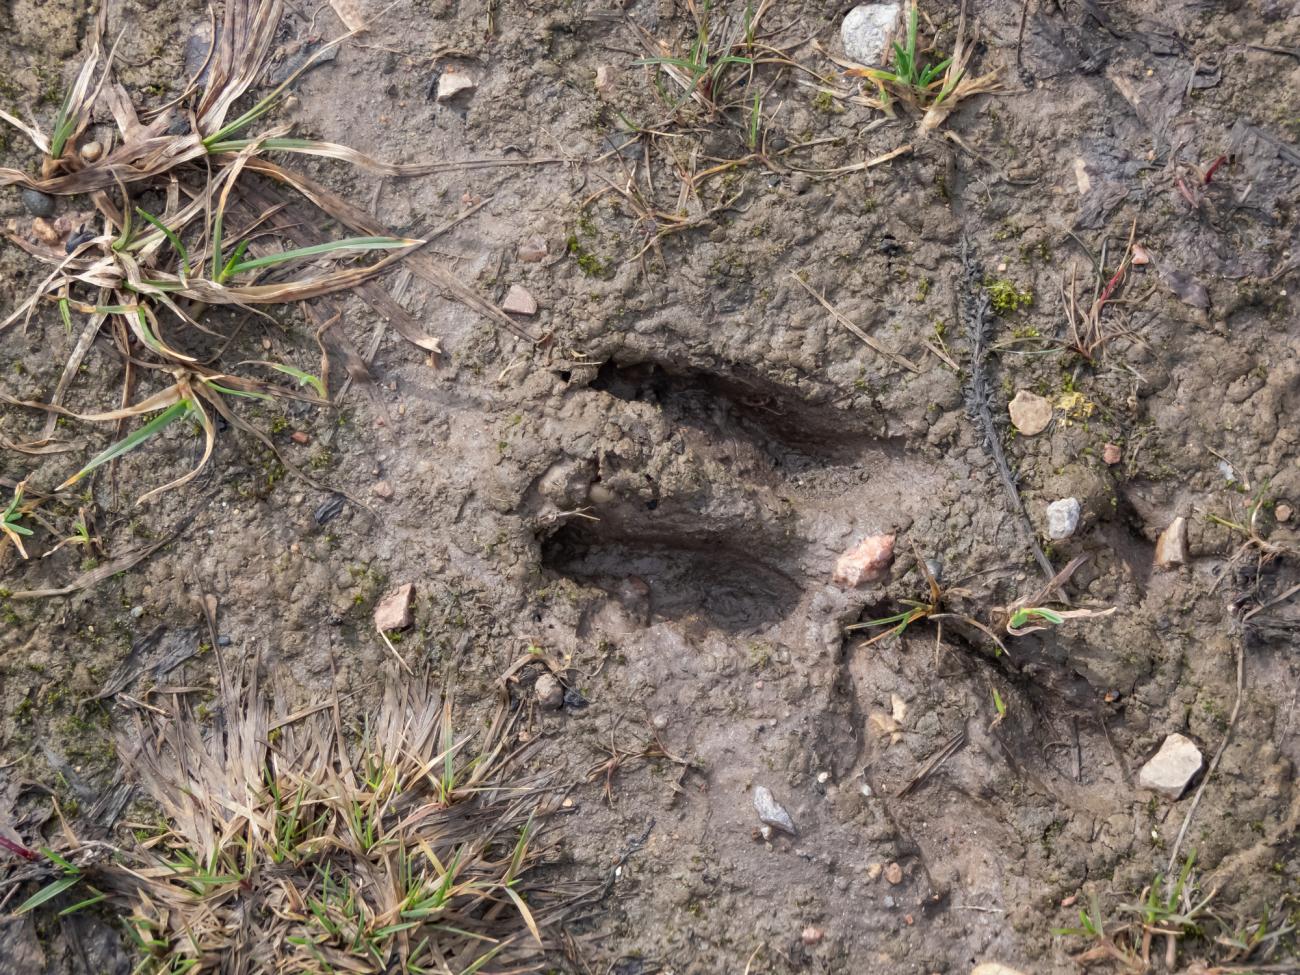 deer footprint